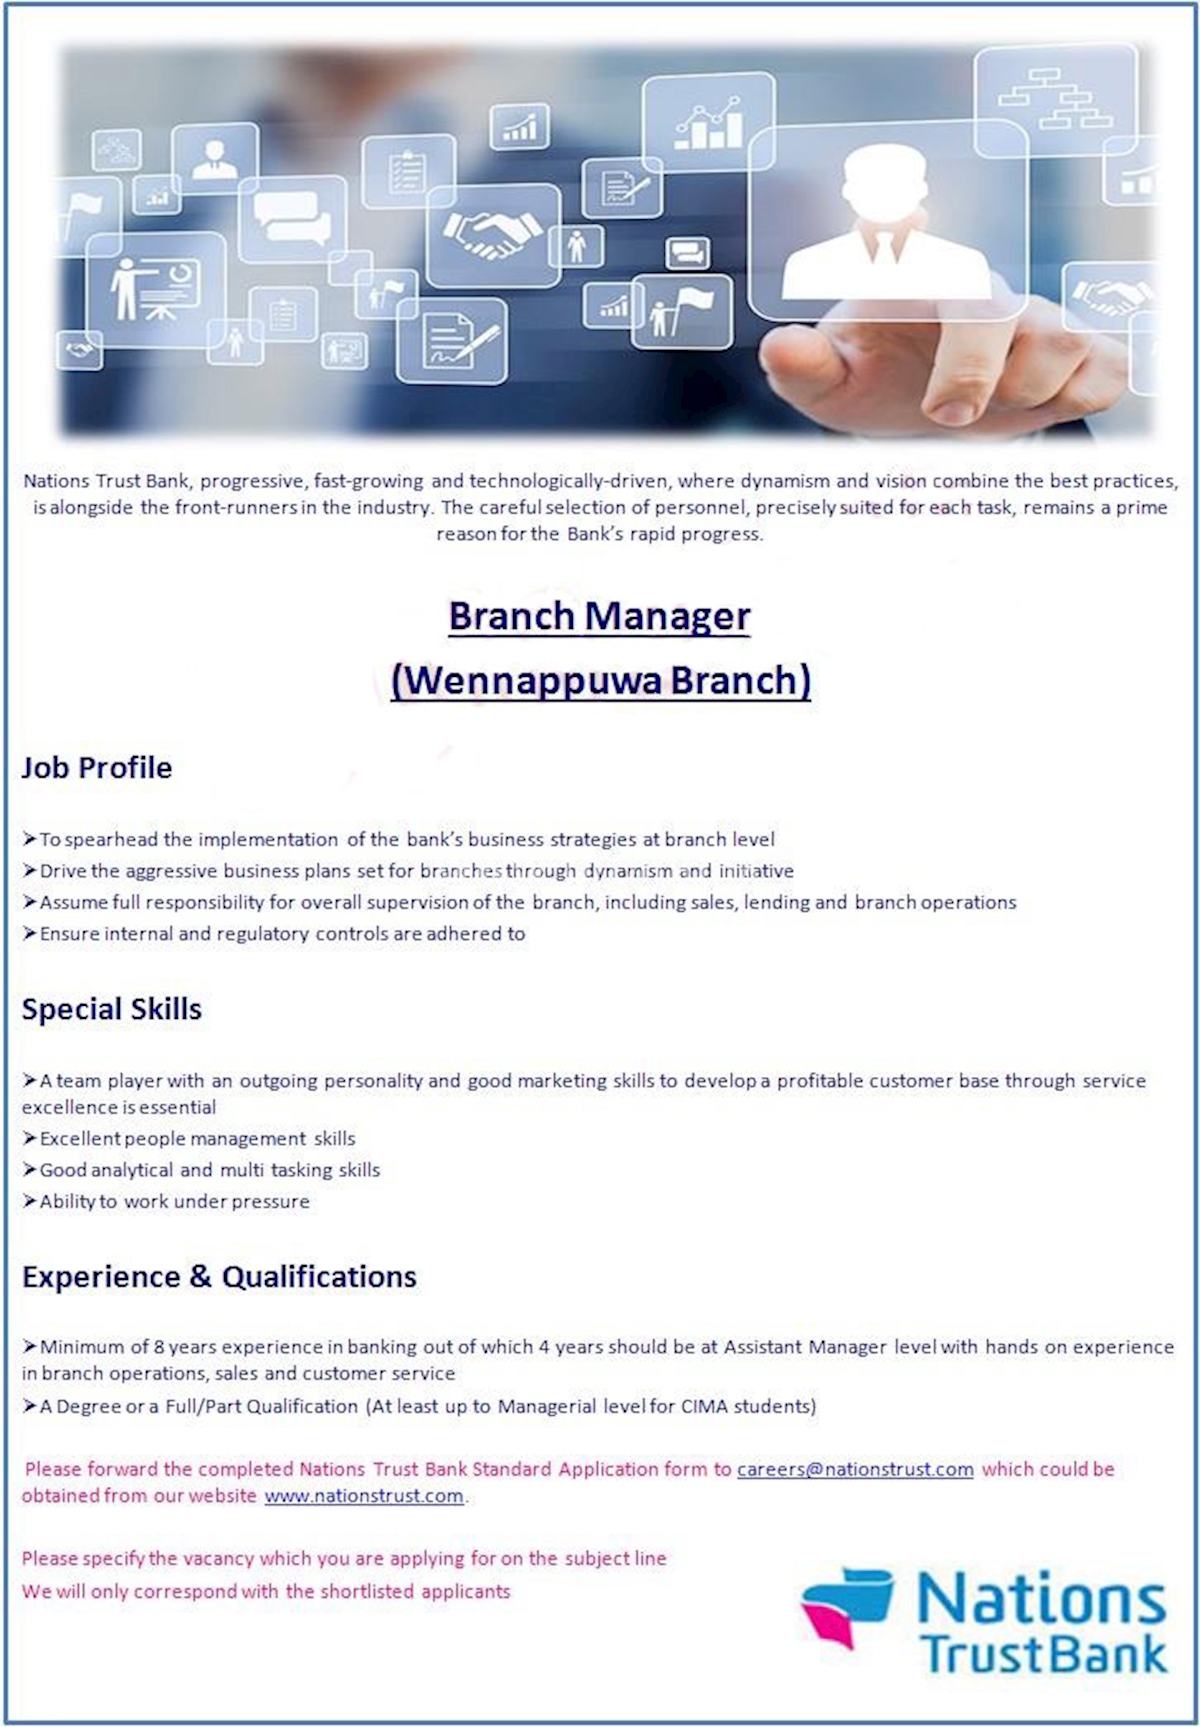 Branch Manager - Wennappuwa Branch